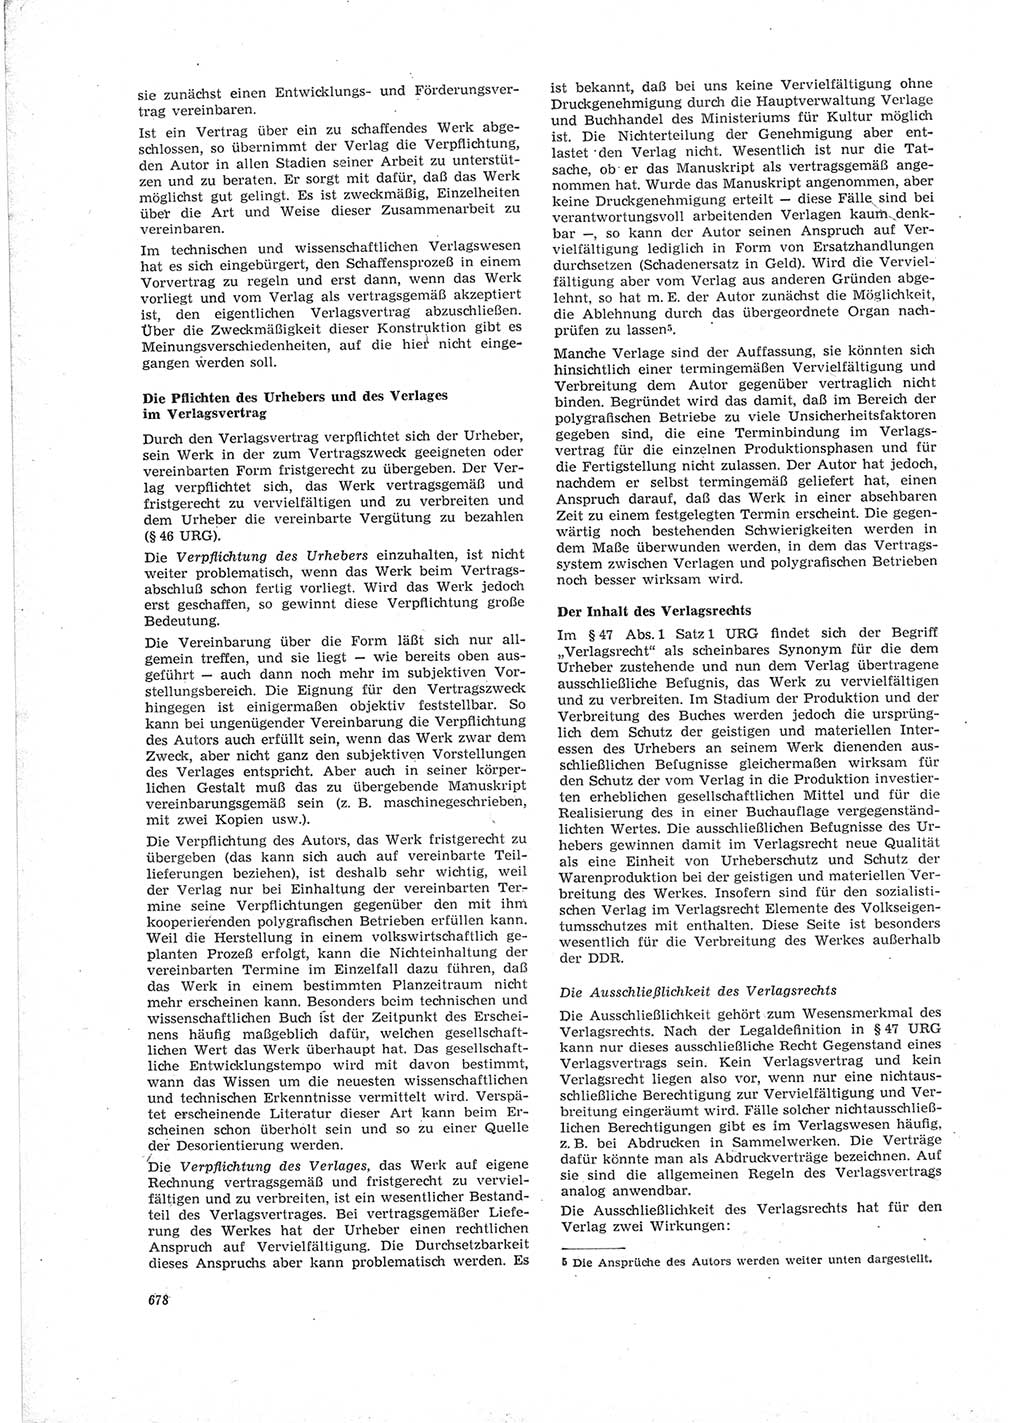 Neue Justiz (NJ), Zeitschrift für Recht und Rechtswissenschaft [Deutsche Demokratische Republik (DDR)], 19. Jahrgang 1965, Seite 678 (NJ DDR 1965, S. 678)